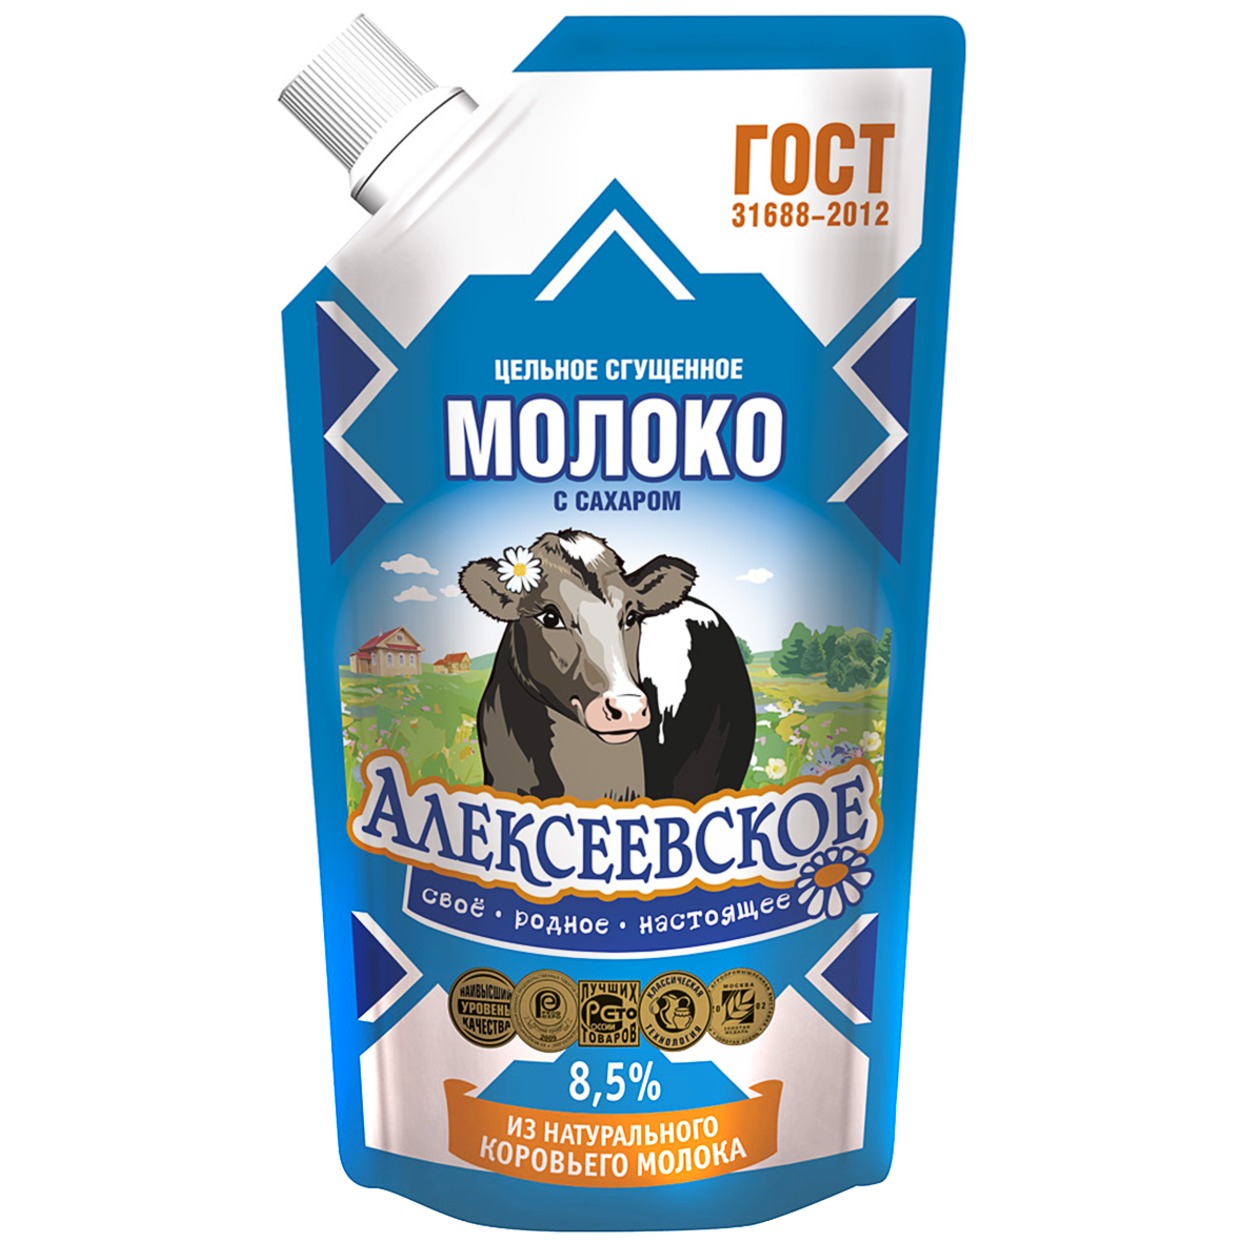 Молоко сгущенное, Алексеевское, цельное с сахаром, 8,5%, 270 г